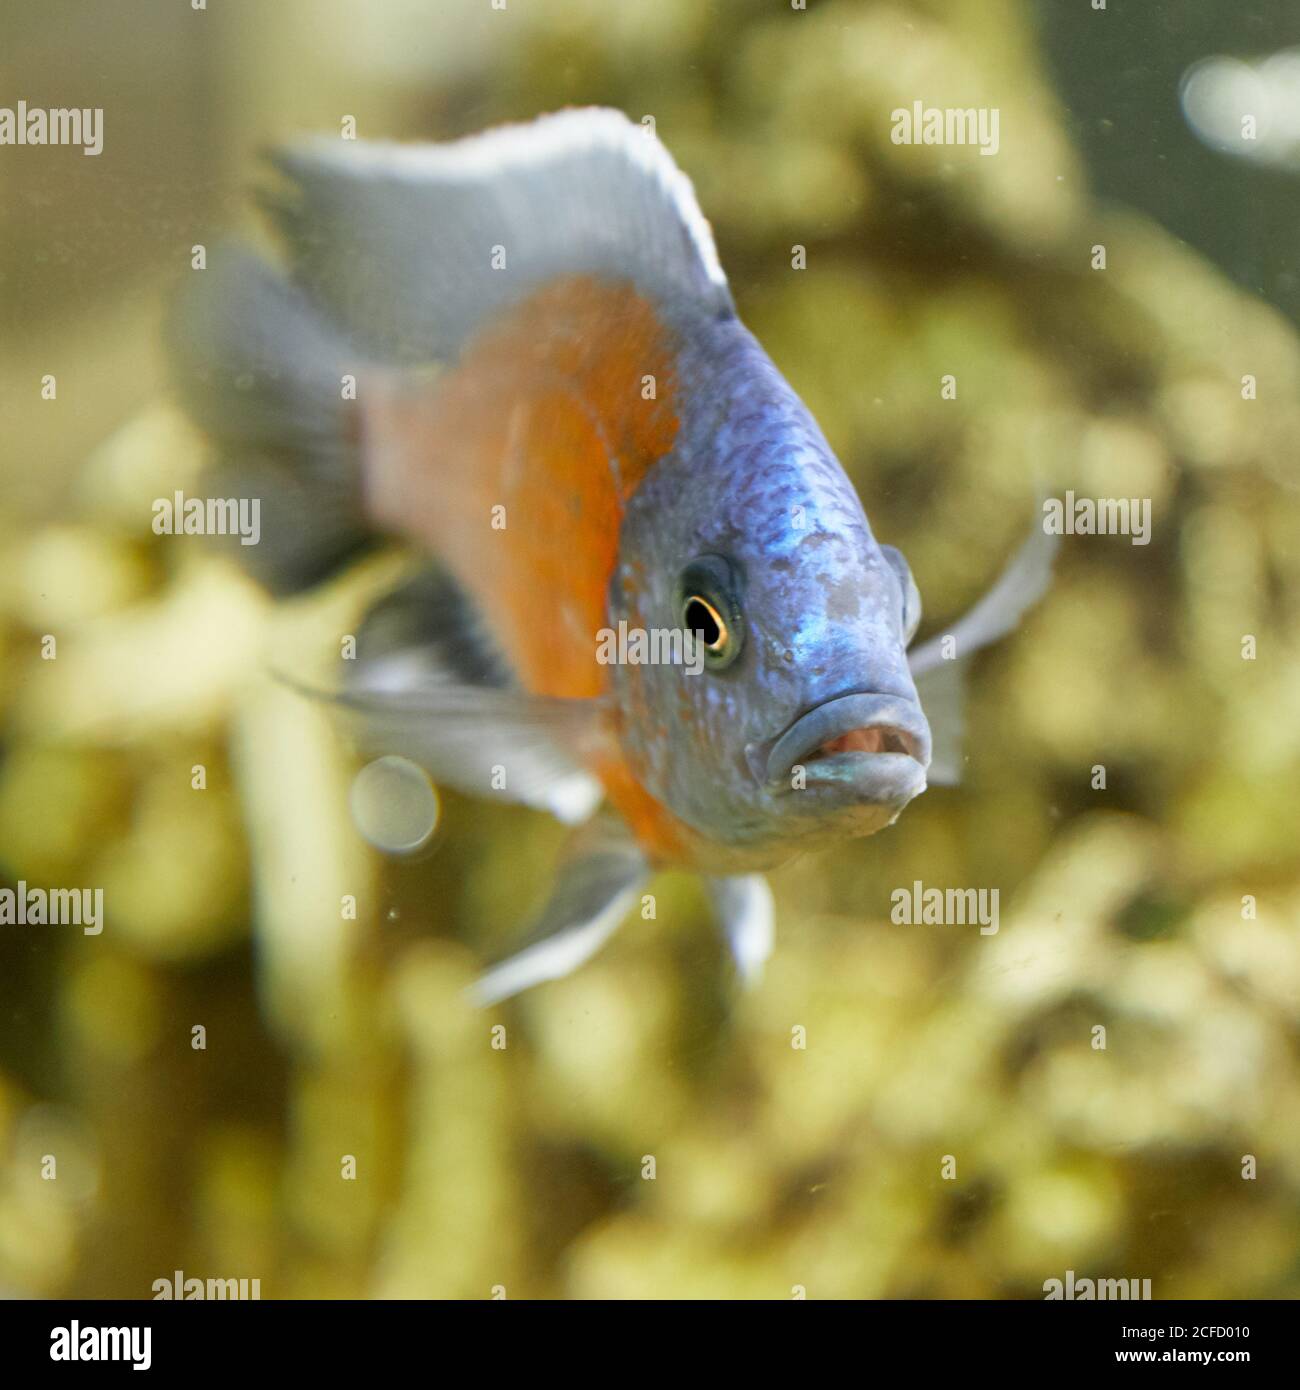 Underwater image of tropical fish. Tropical cichlids in aquarium. Stock Photo